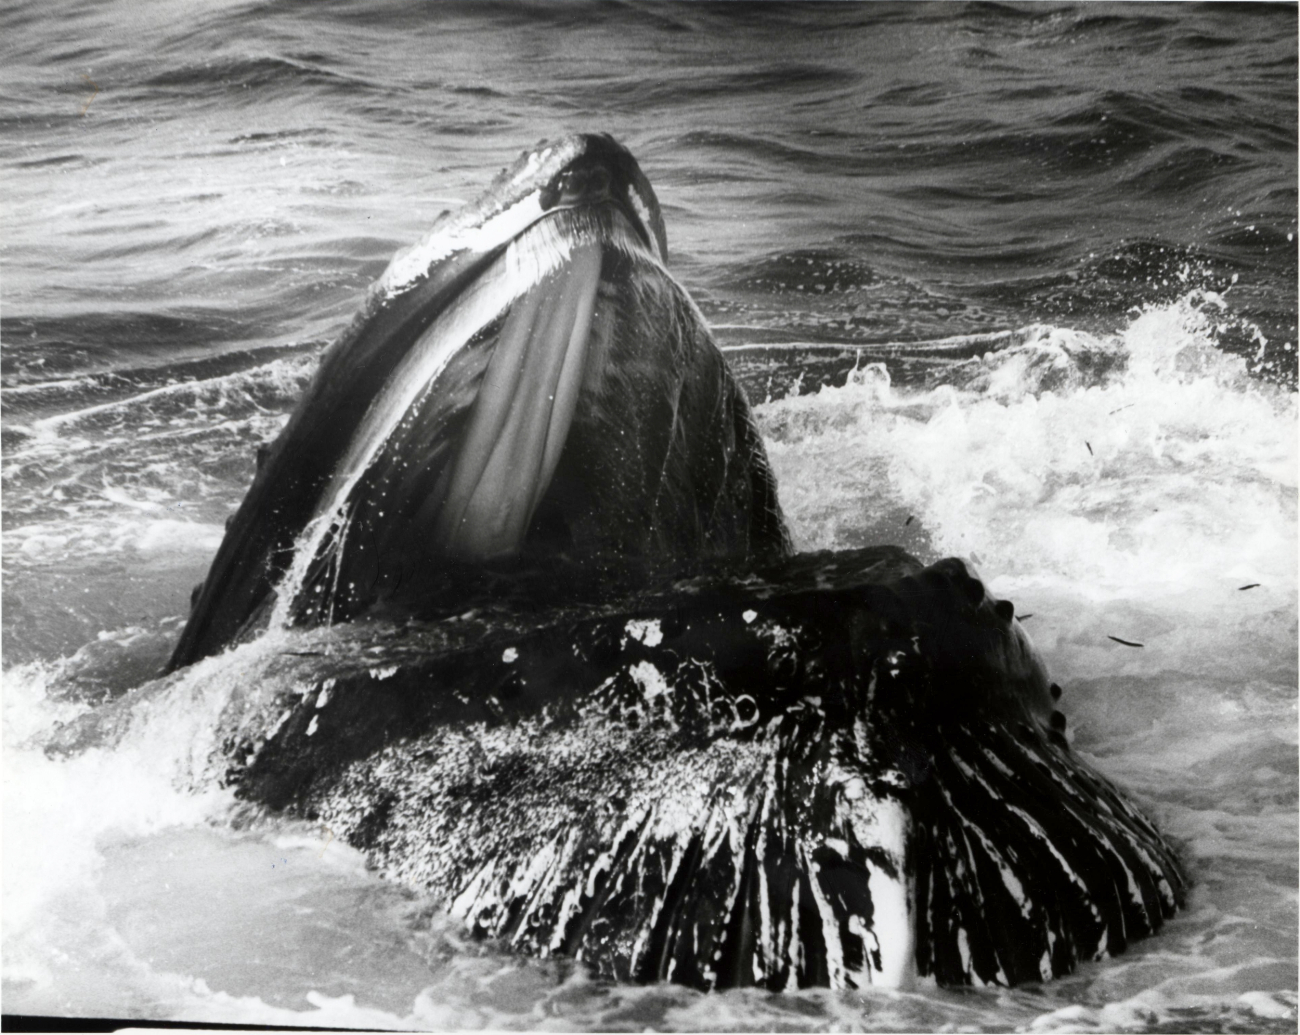 Whale identified as Mars lunge feeding on Stellwagen Bank